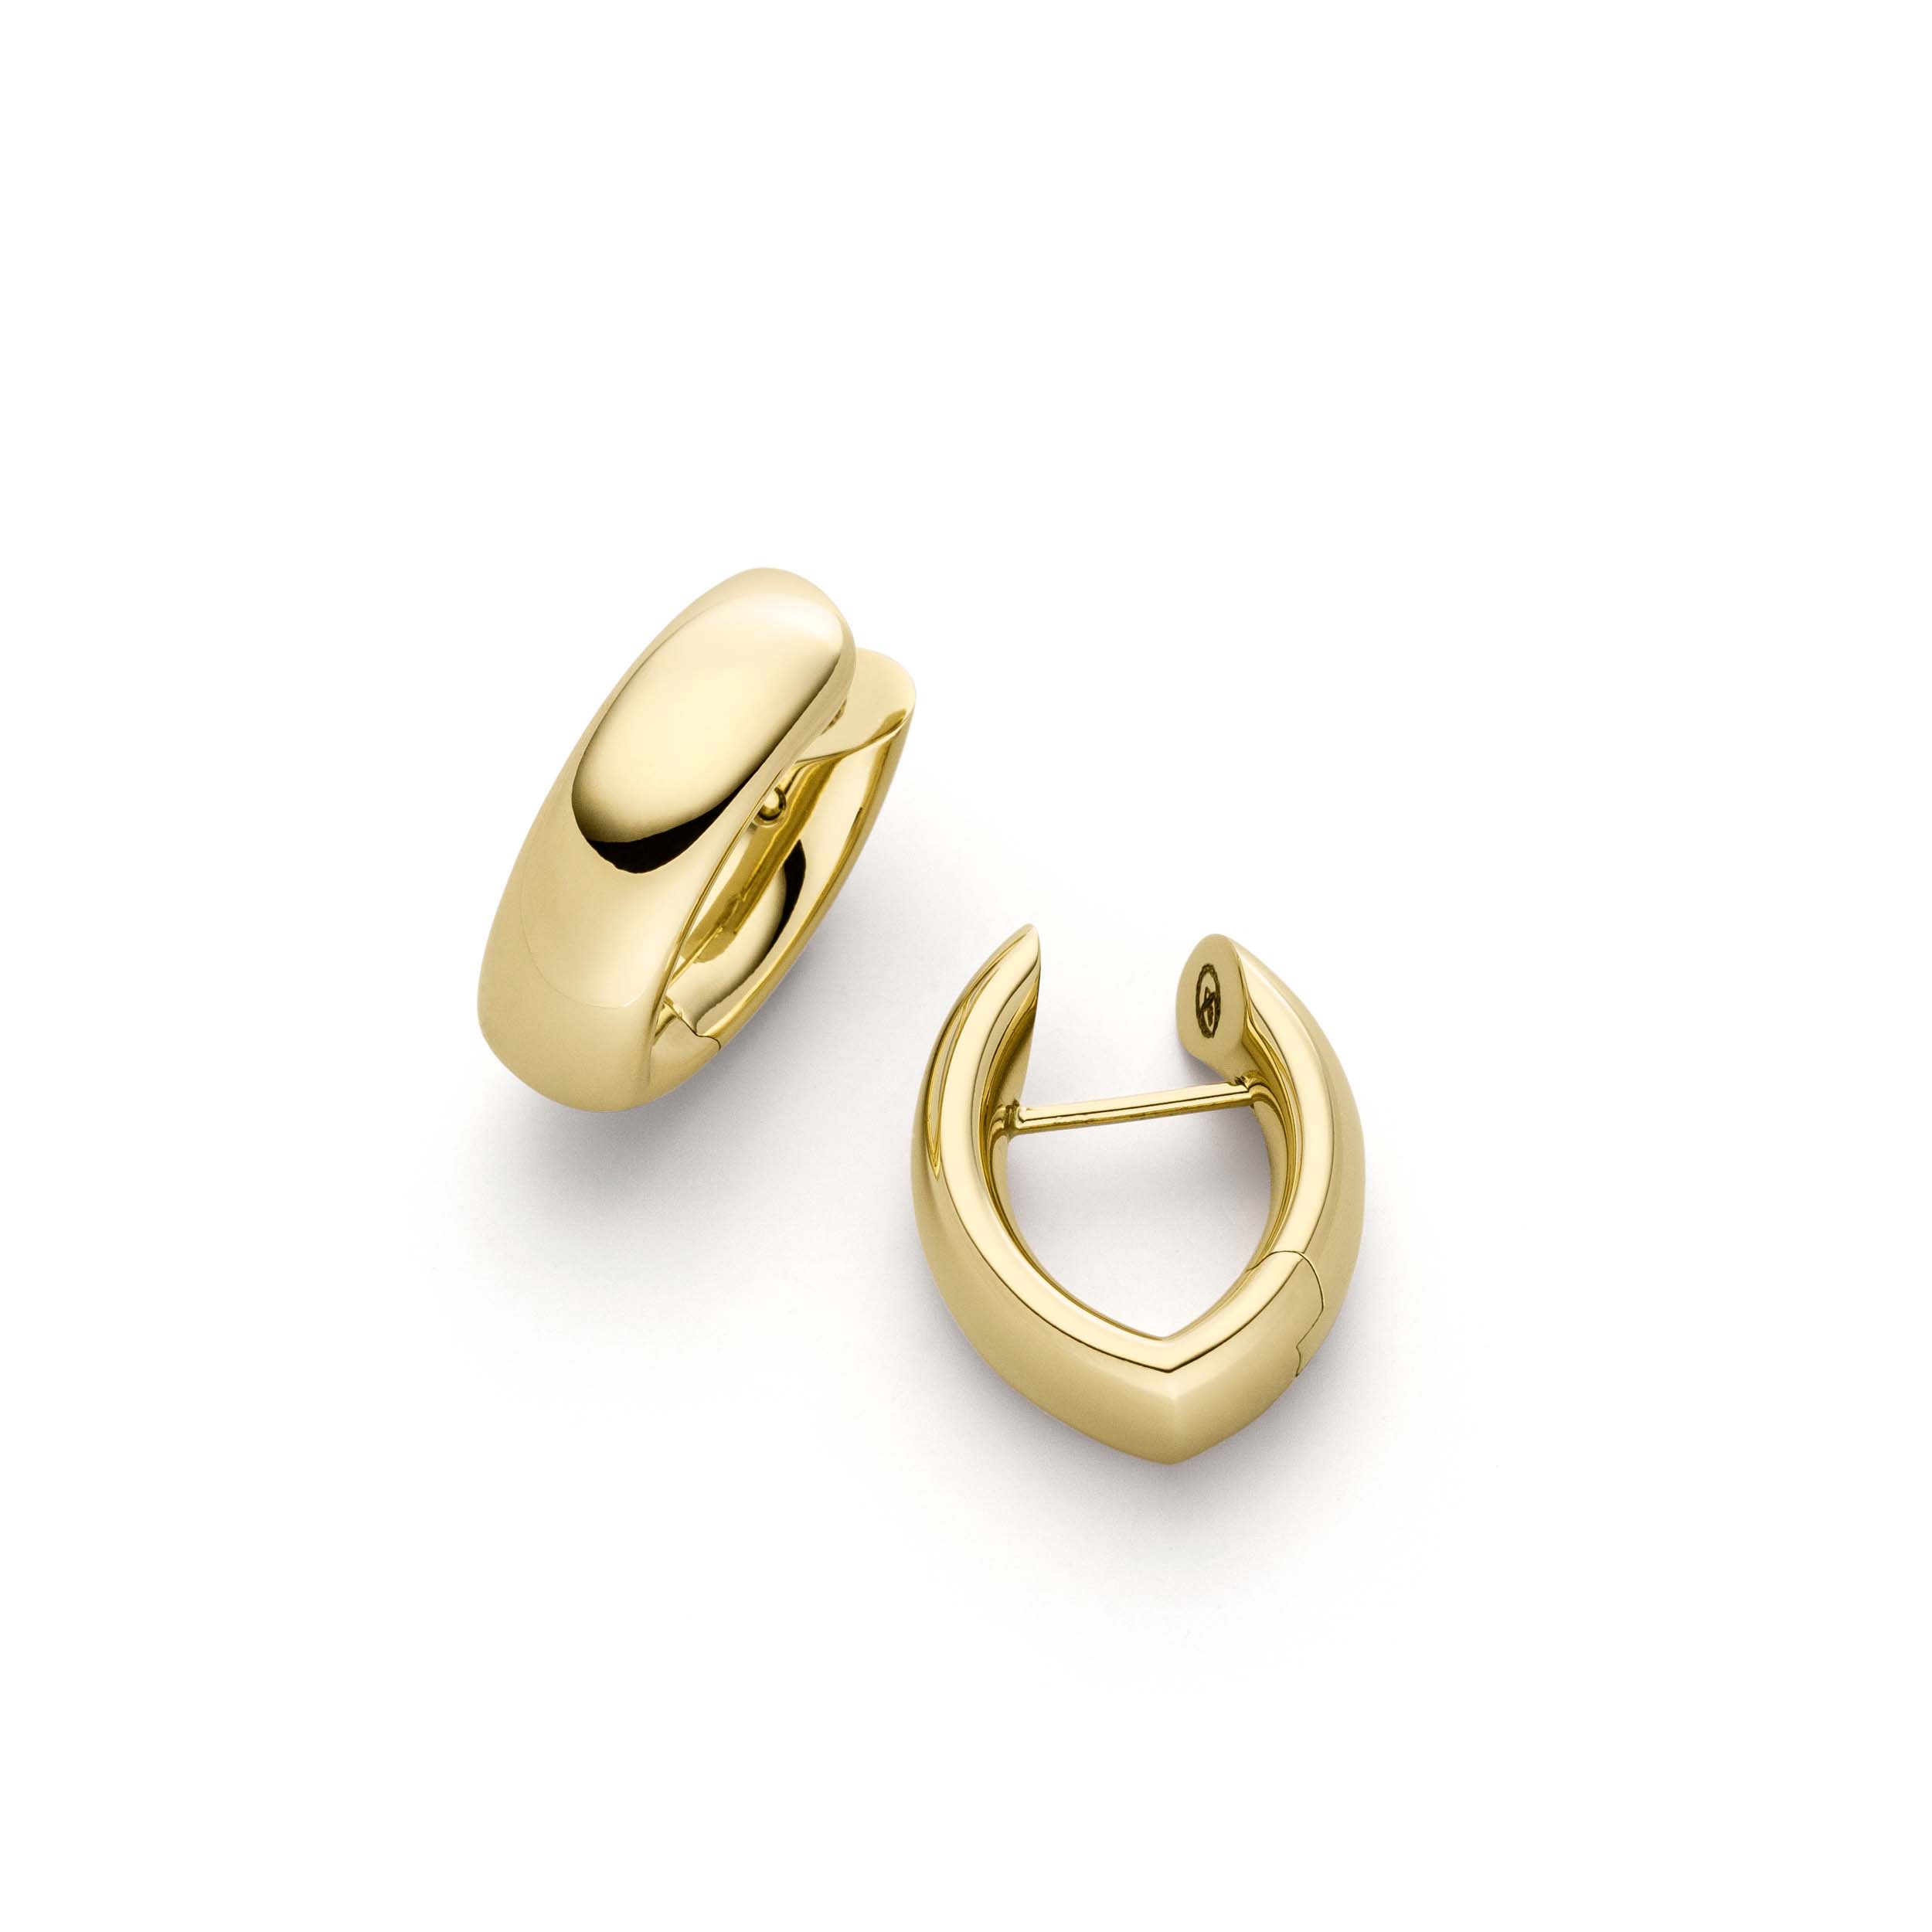 Benutzerdefinierte Ohrringe aus Gelbgold erhalten personalisierten Designerschmuck